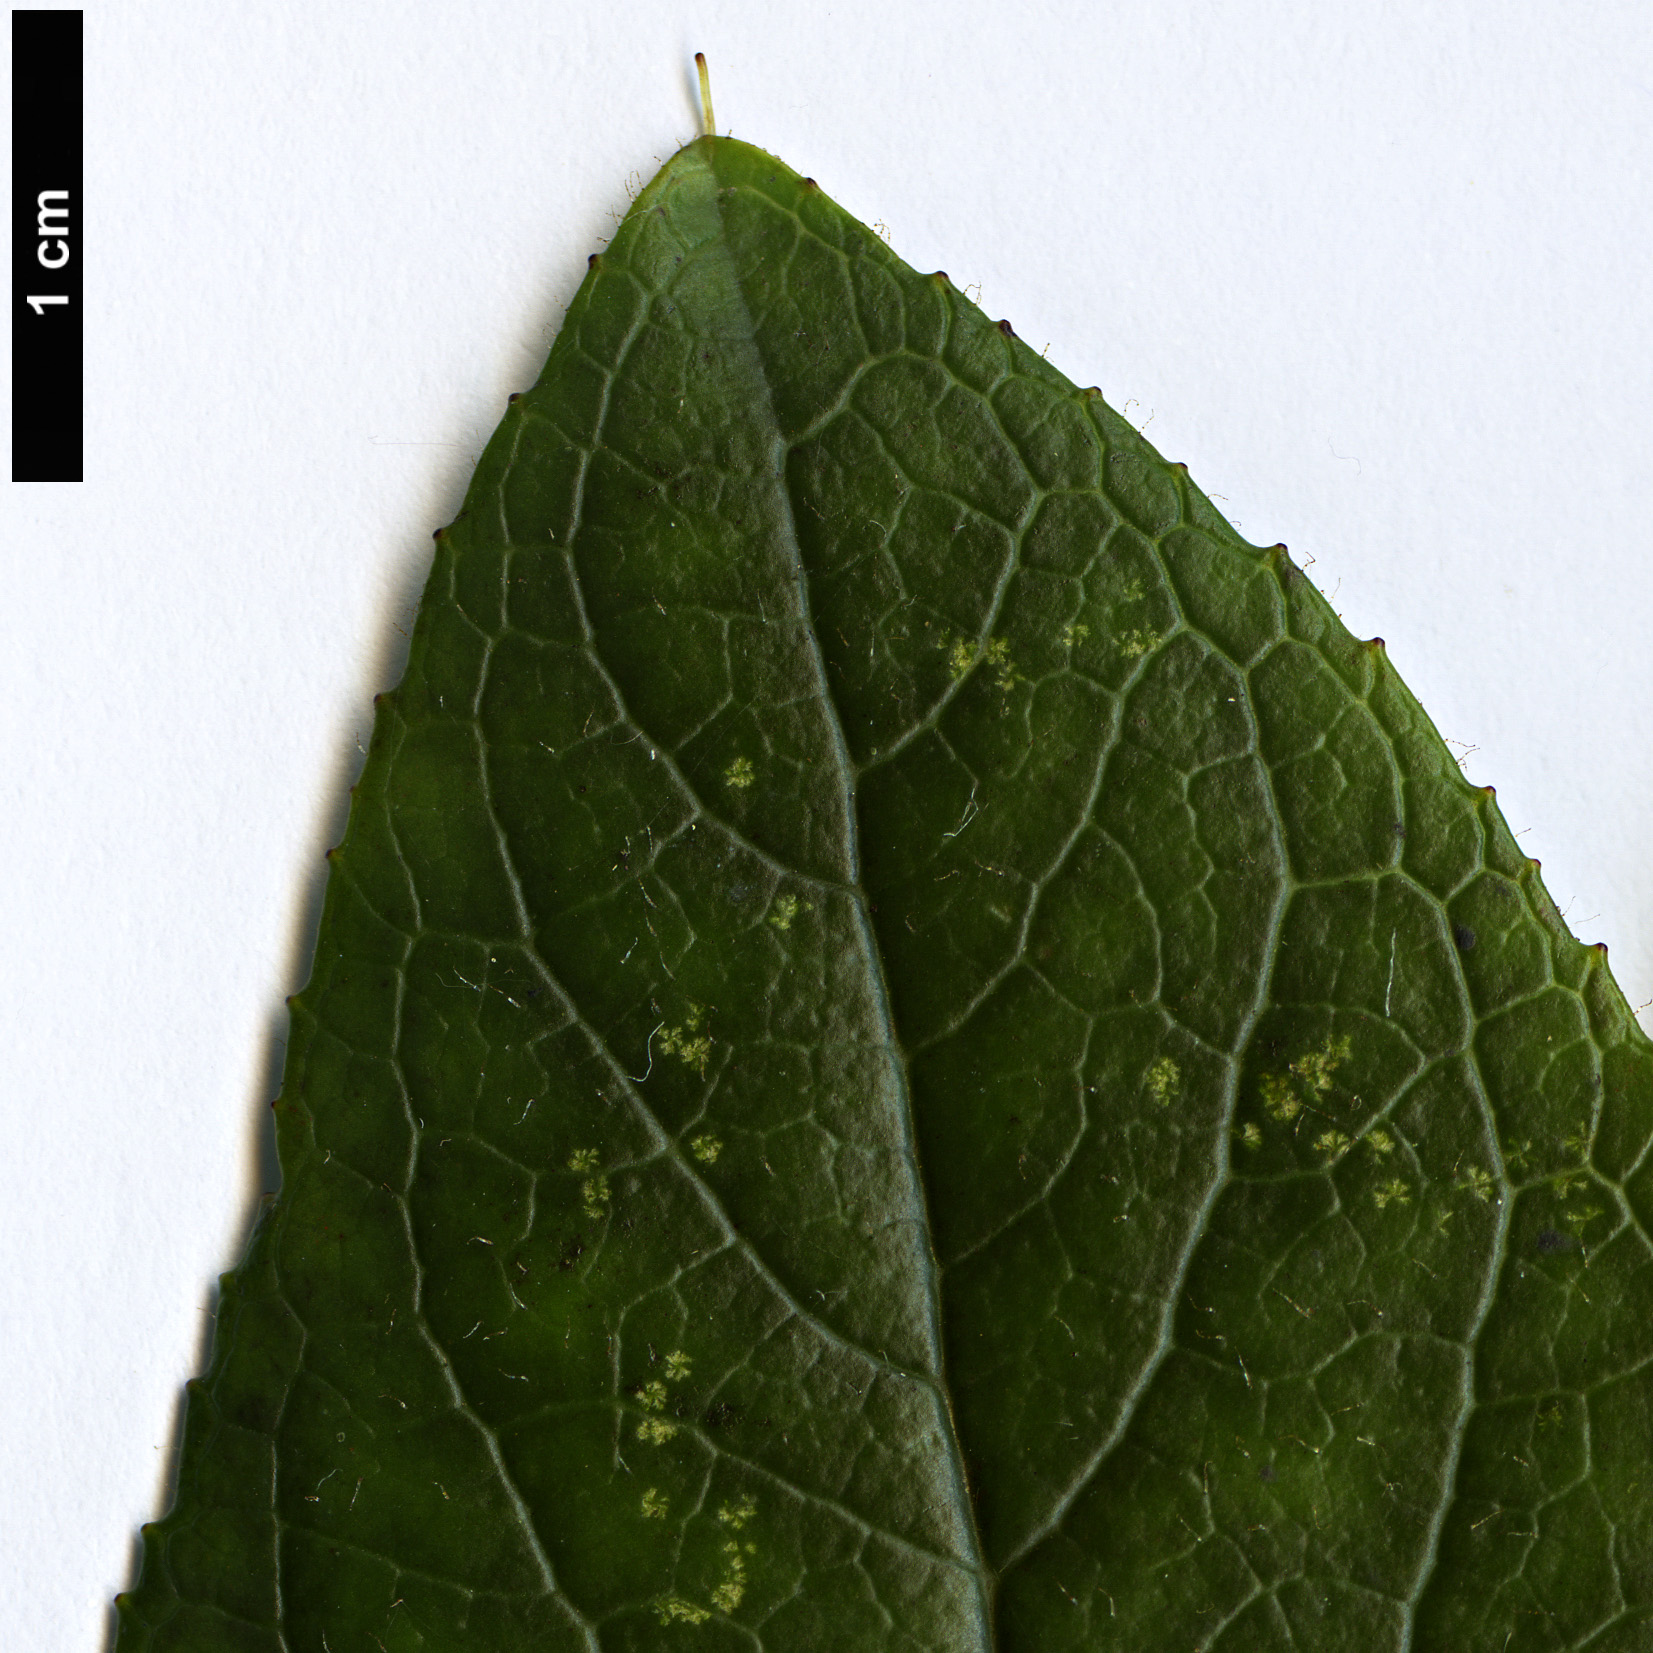 High resolution image: Family: Plantaginaceae - Genus: Isoplexis - Taxon: sceptrum